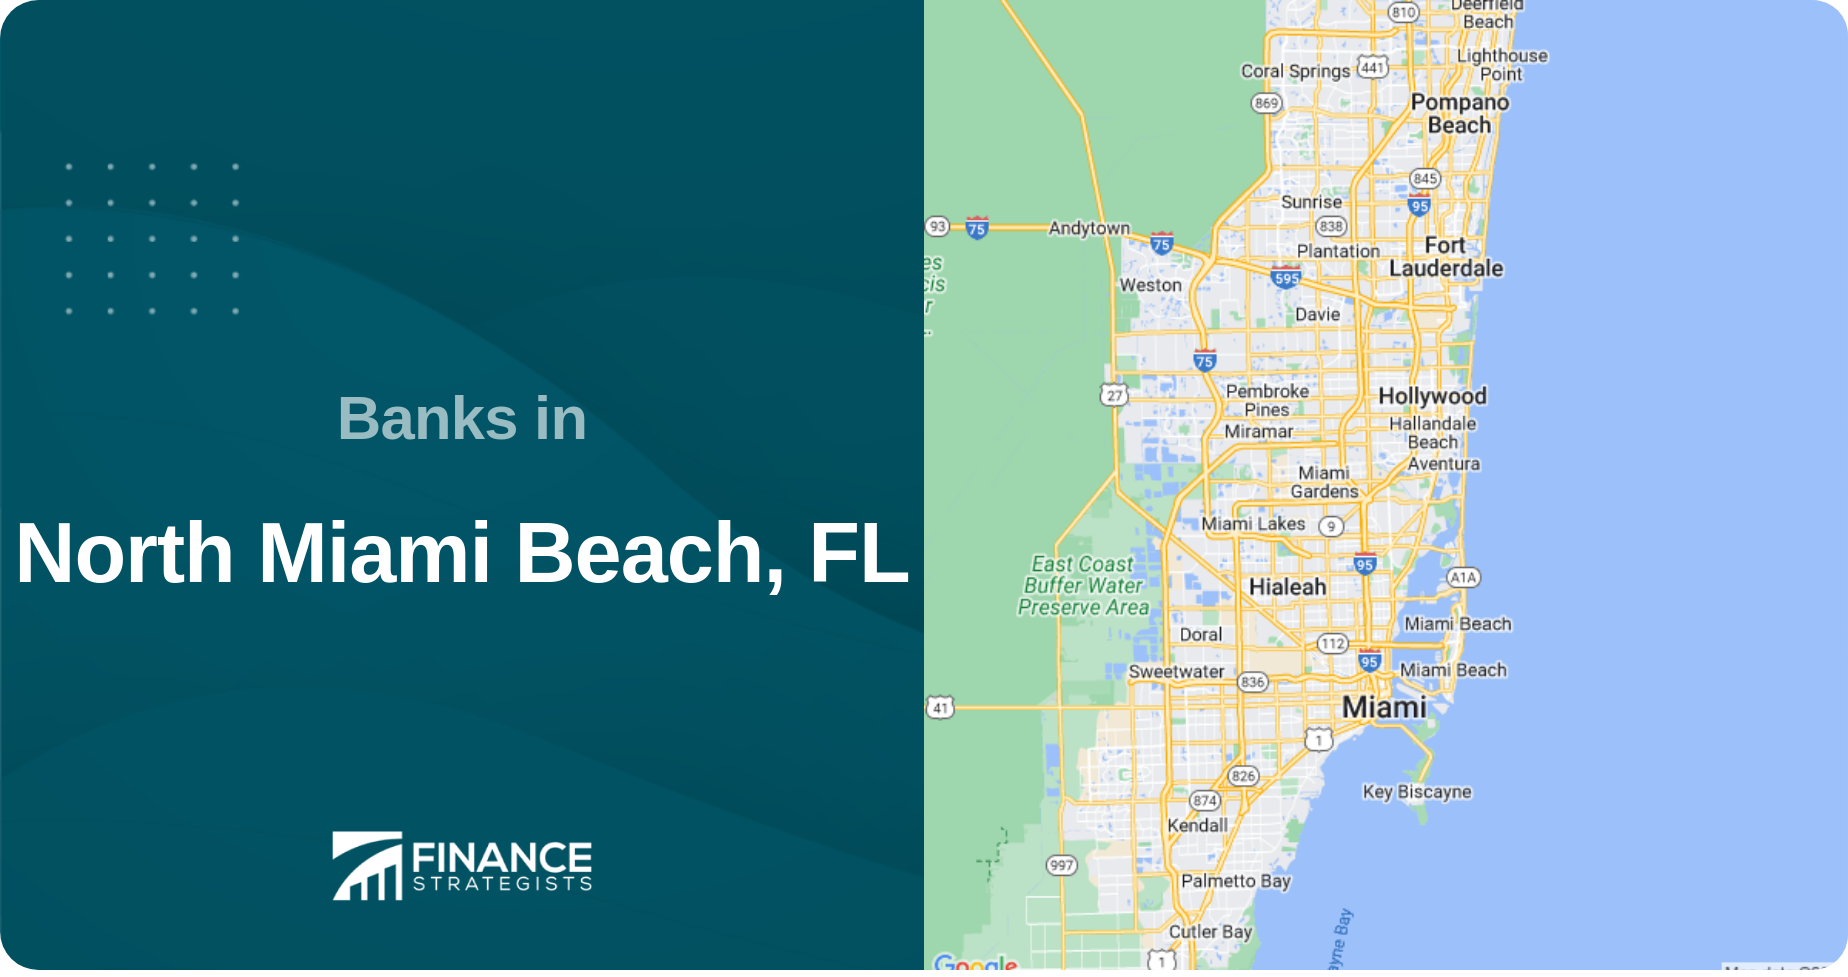 Banks in North Miami Beach, FL